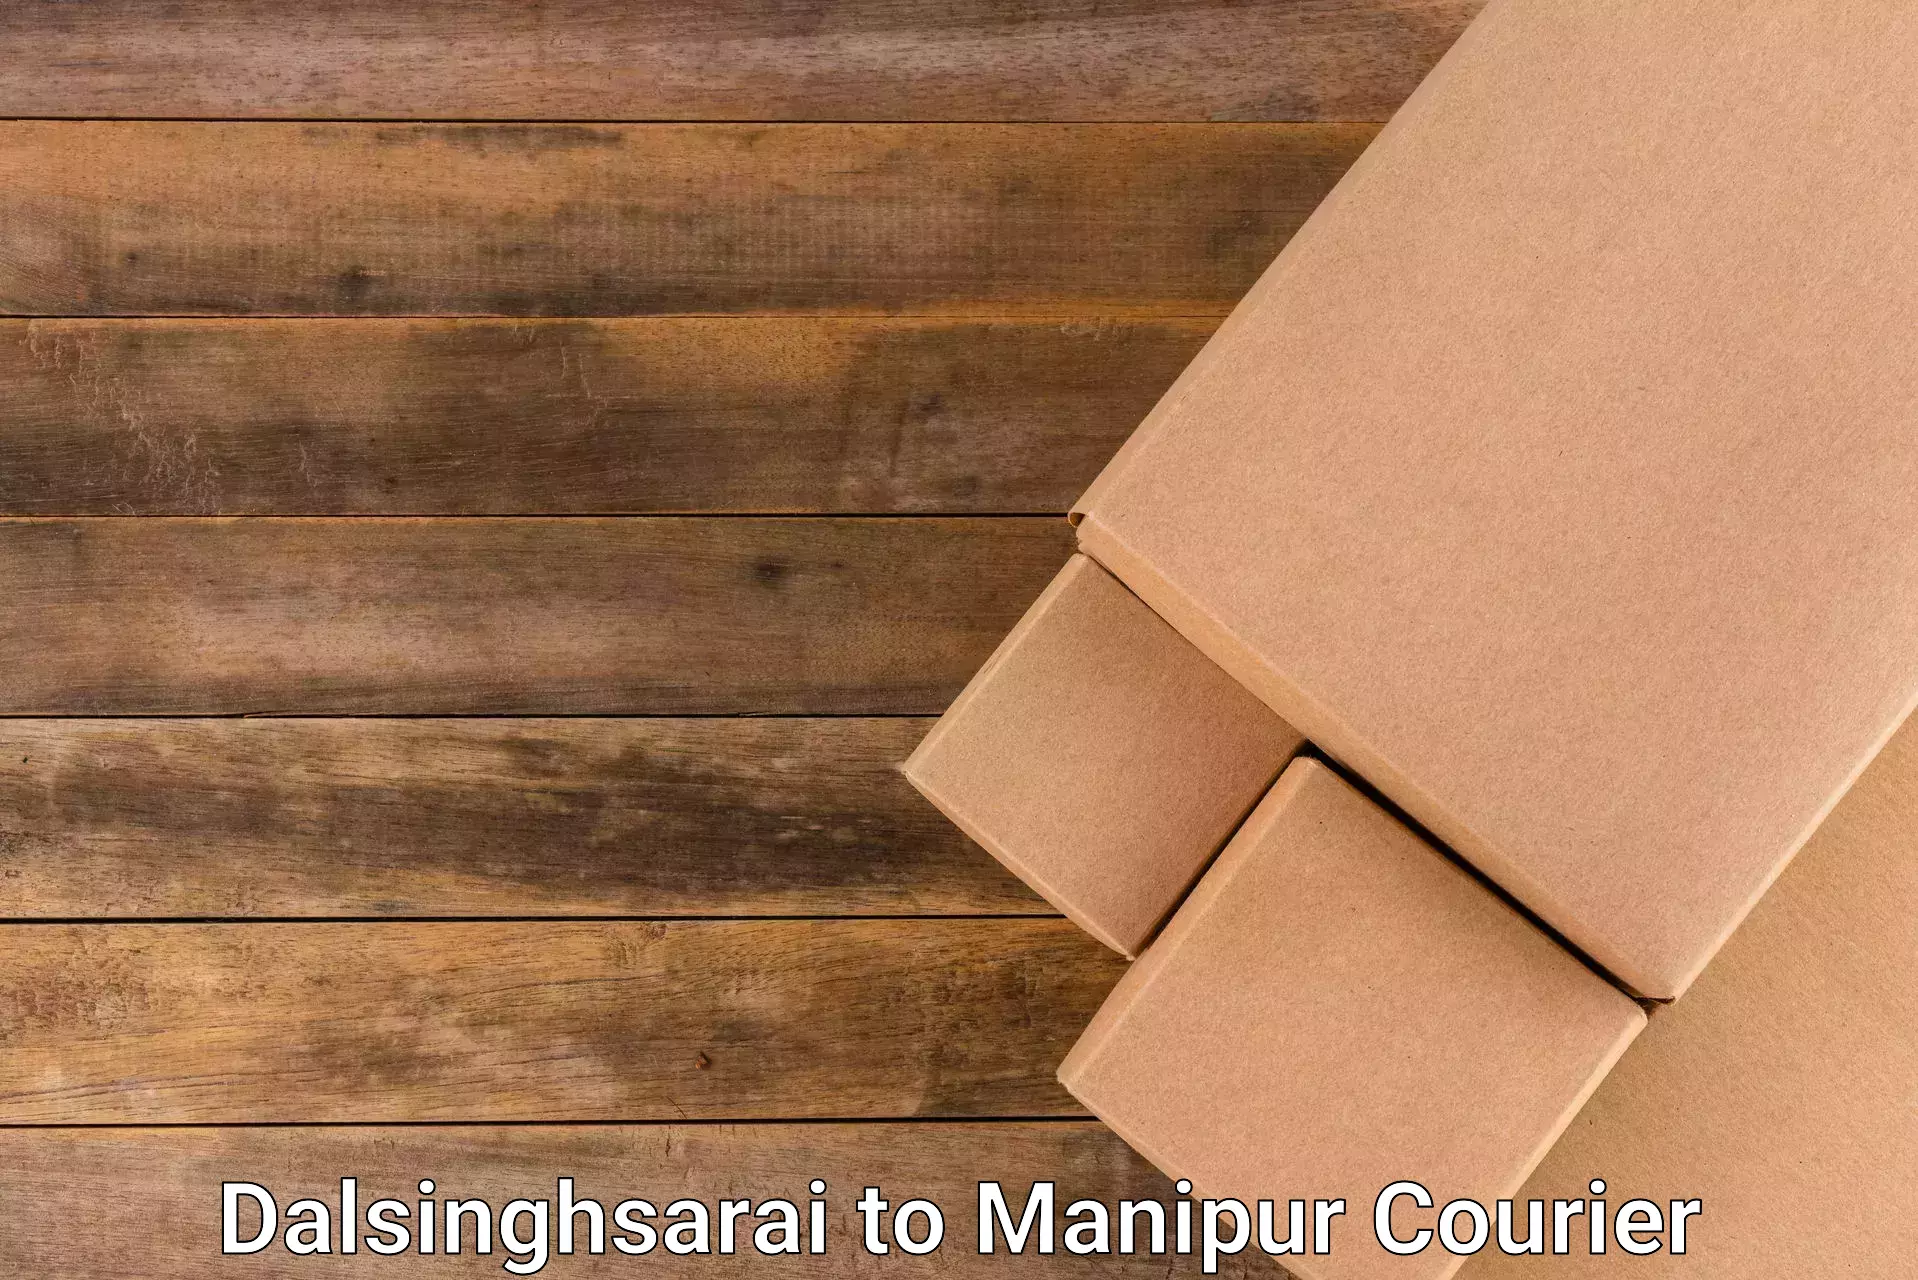 On-demand courier Dalsinghsarai to Senapati